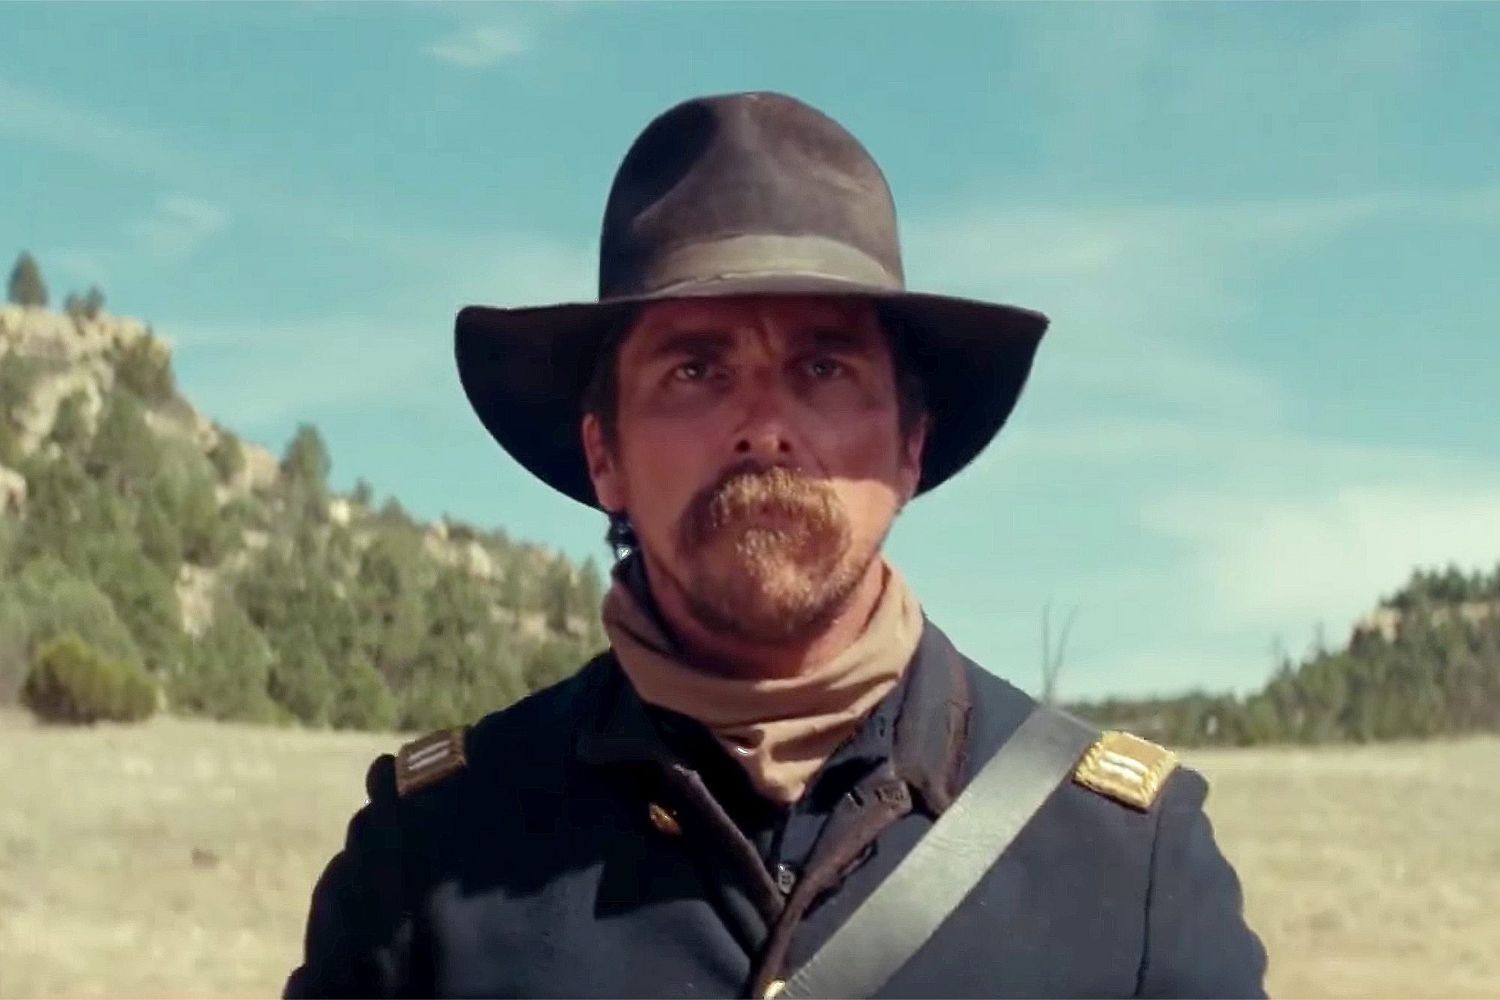 Christian Bale in 2017's Hostiles